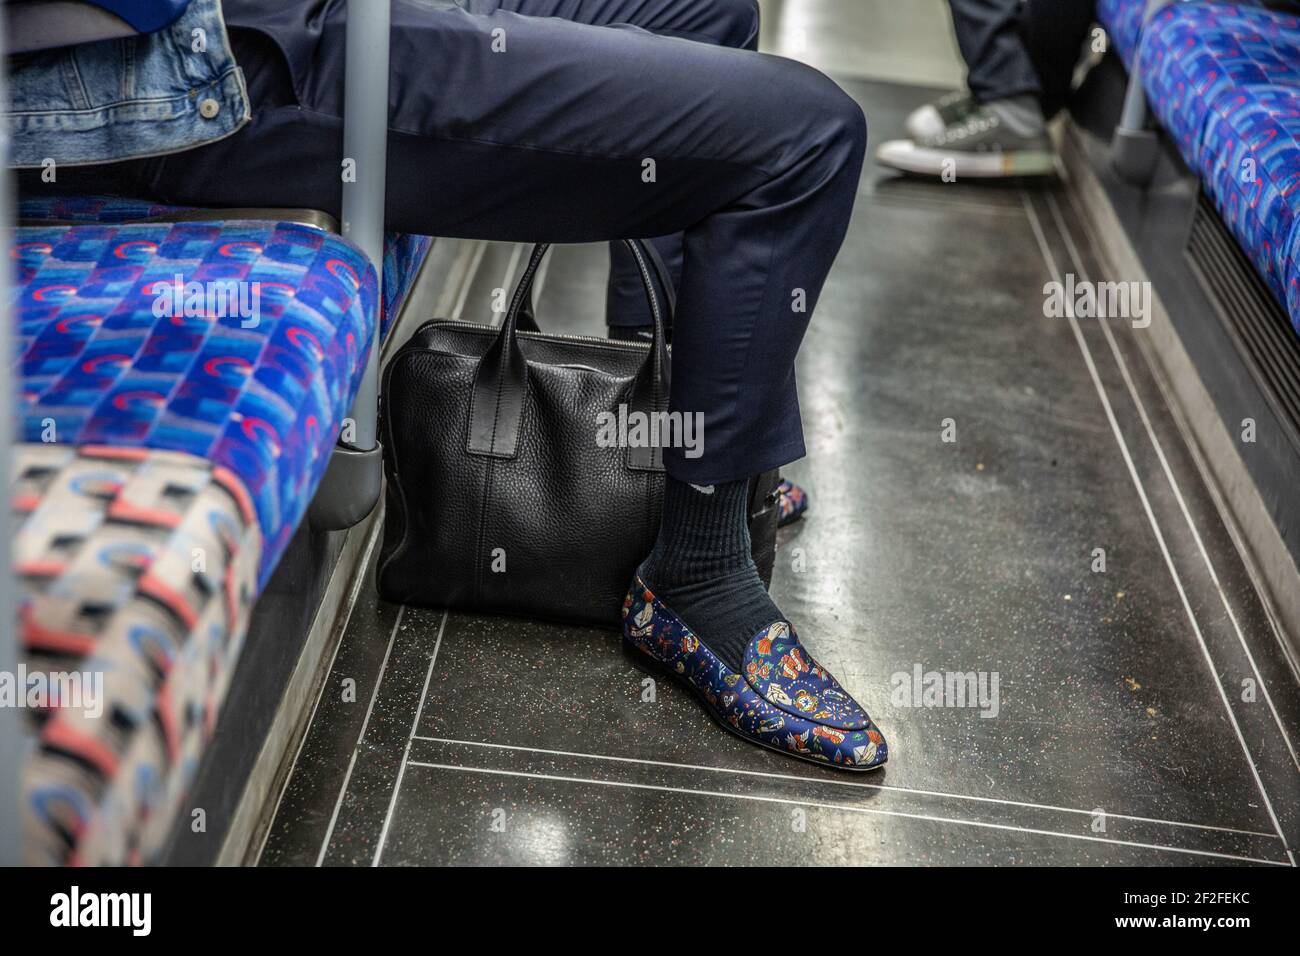 Mann mit bunten Slipper-Schuhen auf der Fahrt mit der Londoner U-Bahn, England, Großbritannien Stockfoto